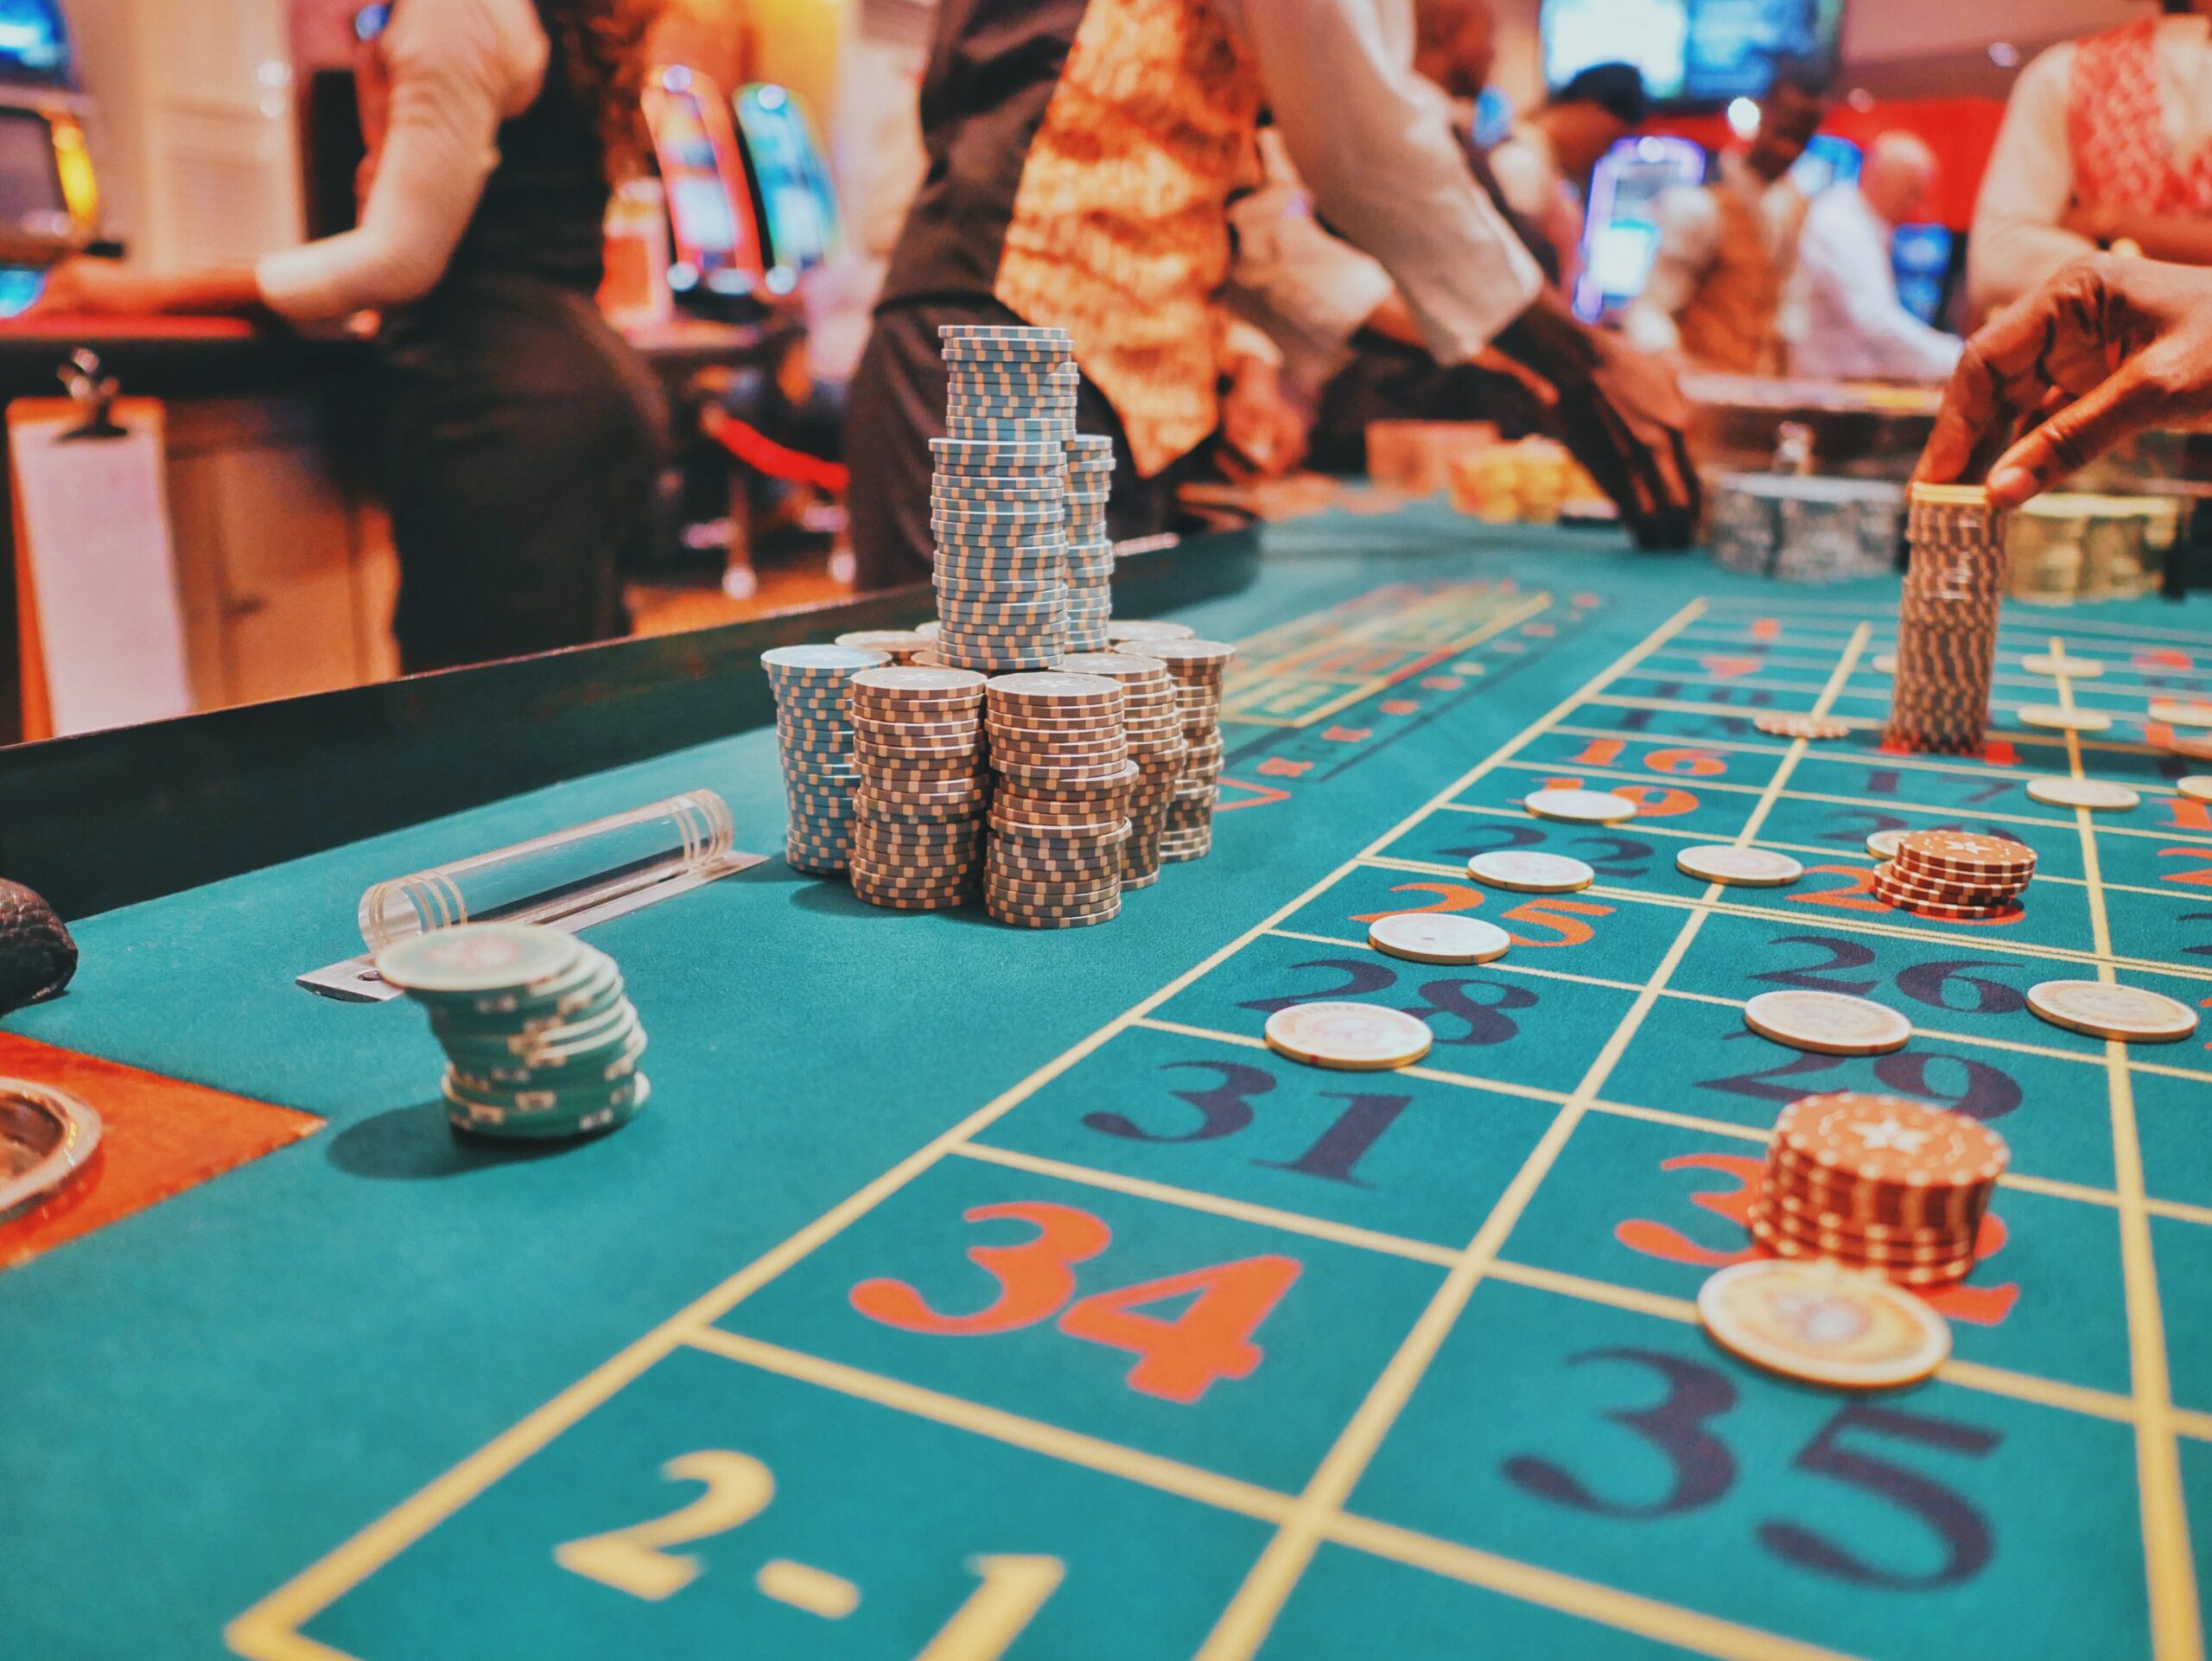 Das Online-Casino bietet viele Vorteile. Foto: Unsplash/Kaysha